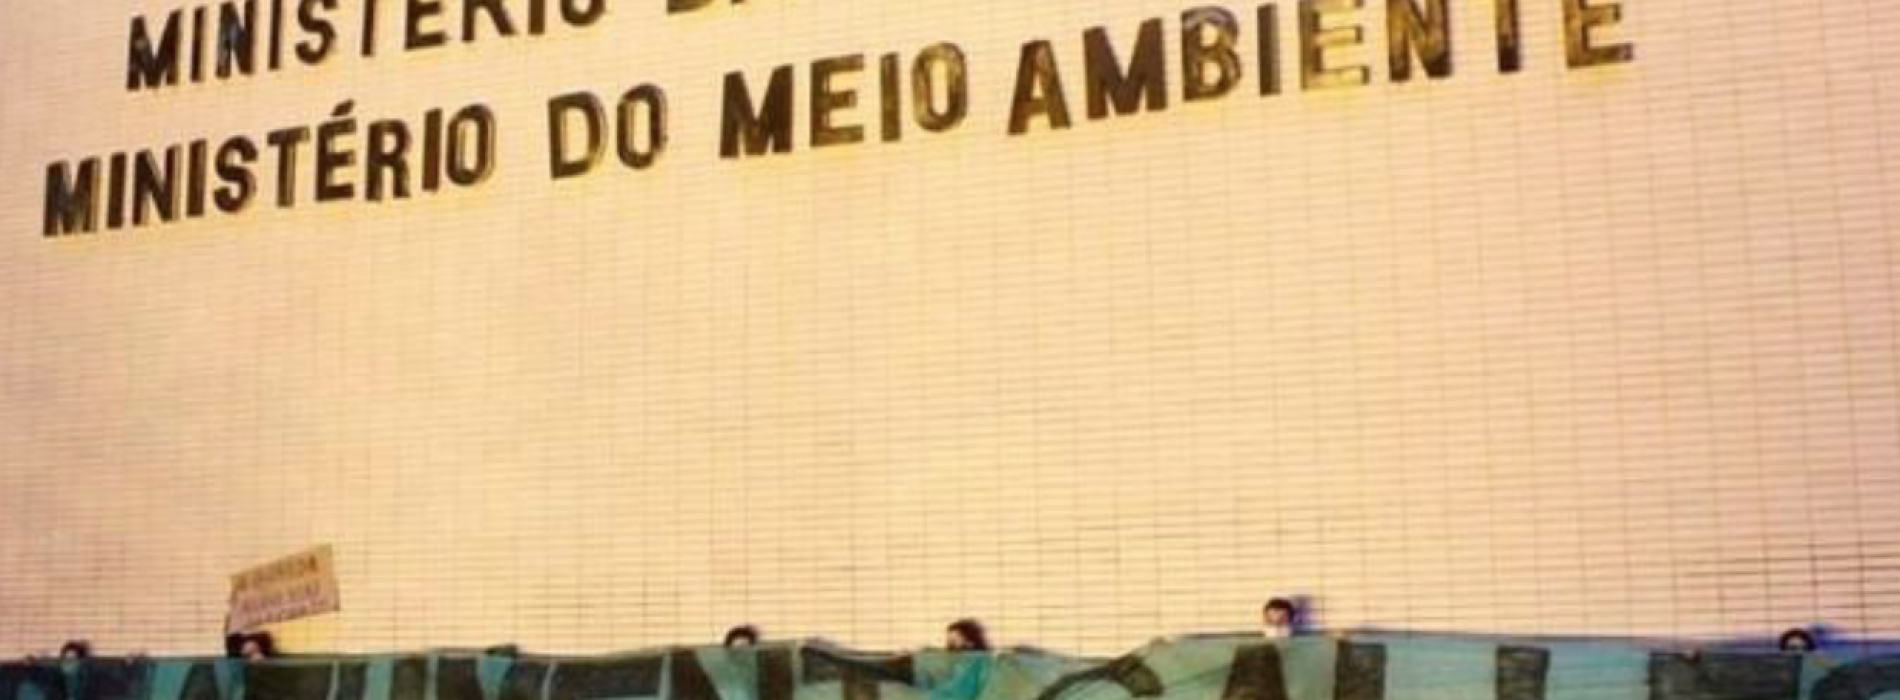 Salles aprofunda desgaste do Brasil e coloca em xeque acordo Mercosul-UE